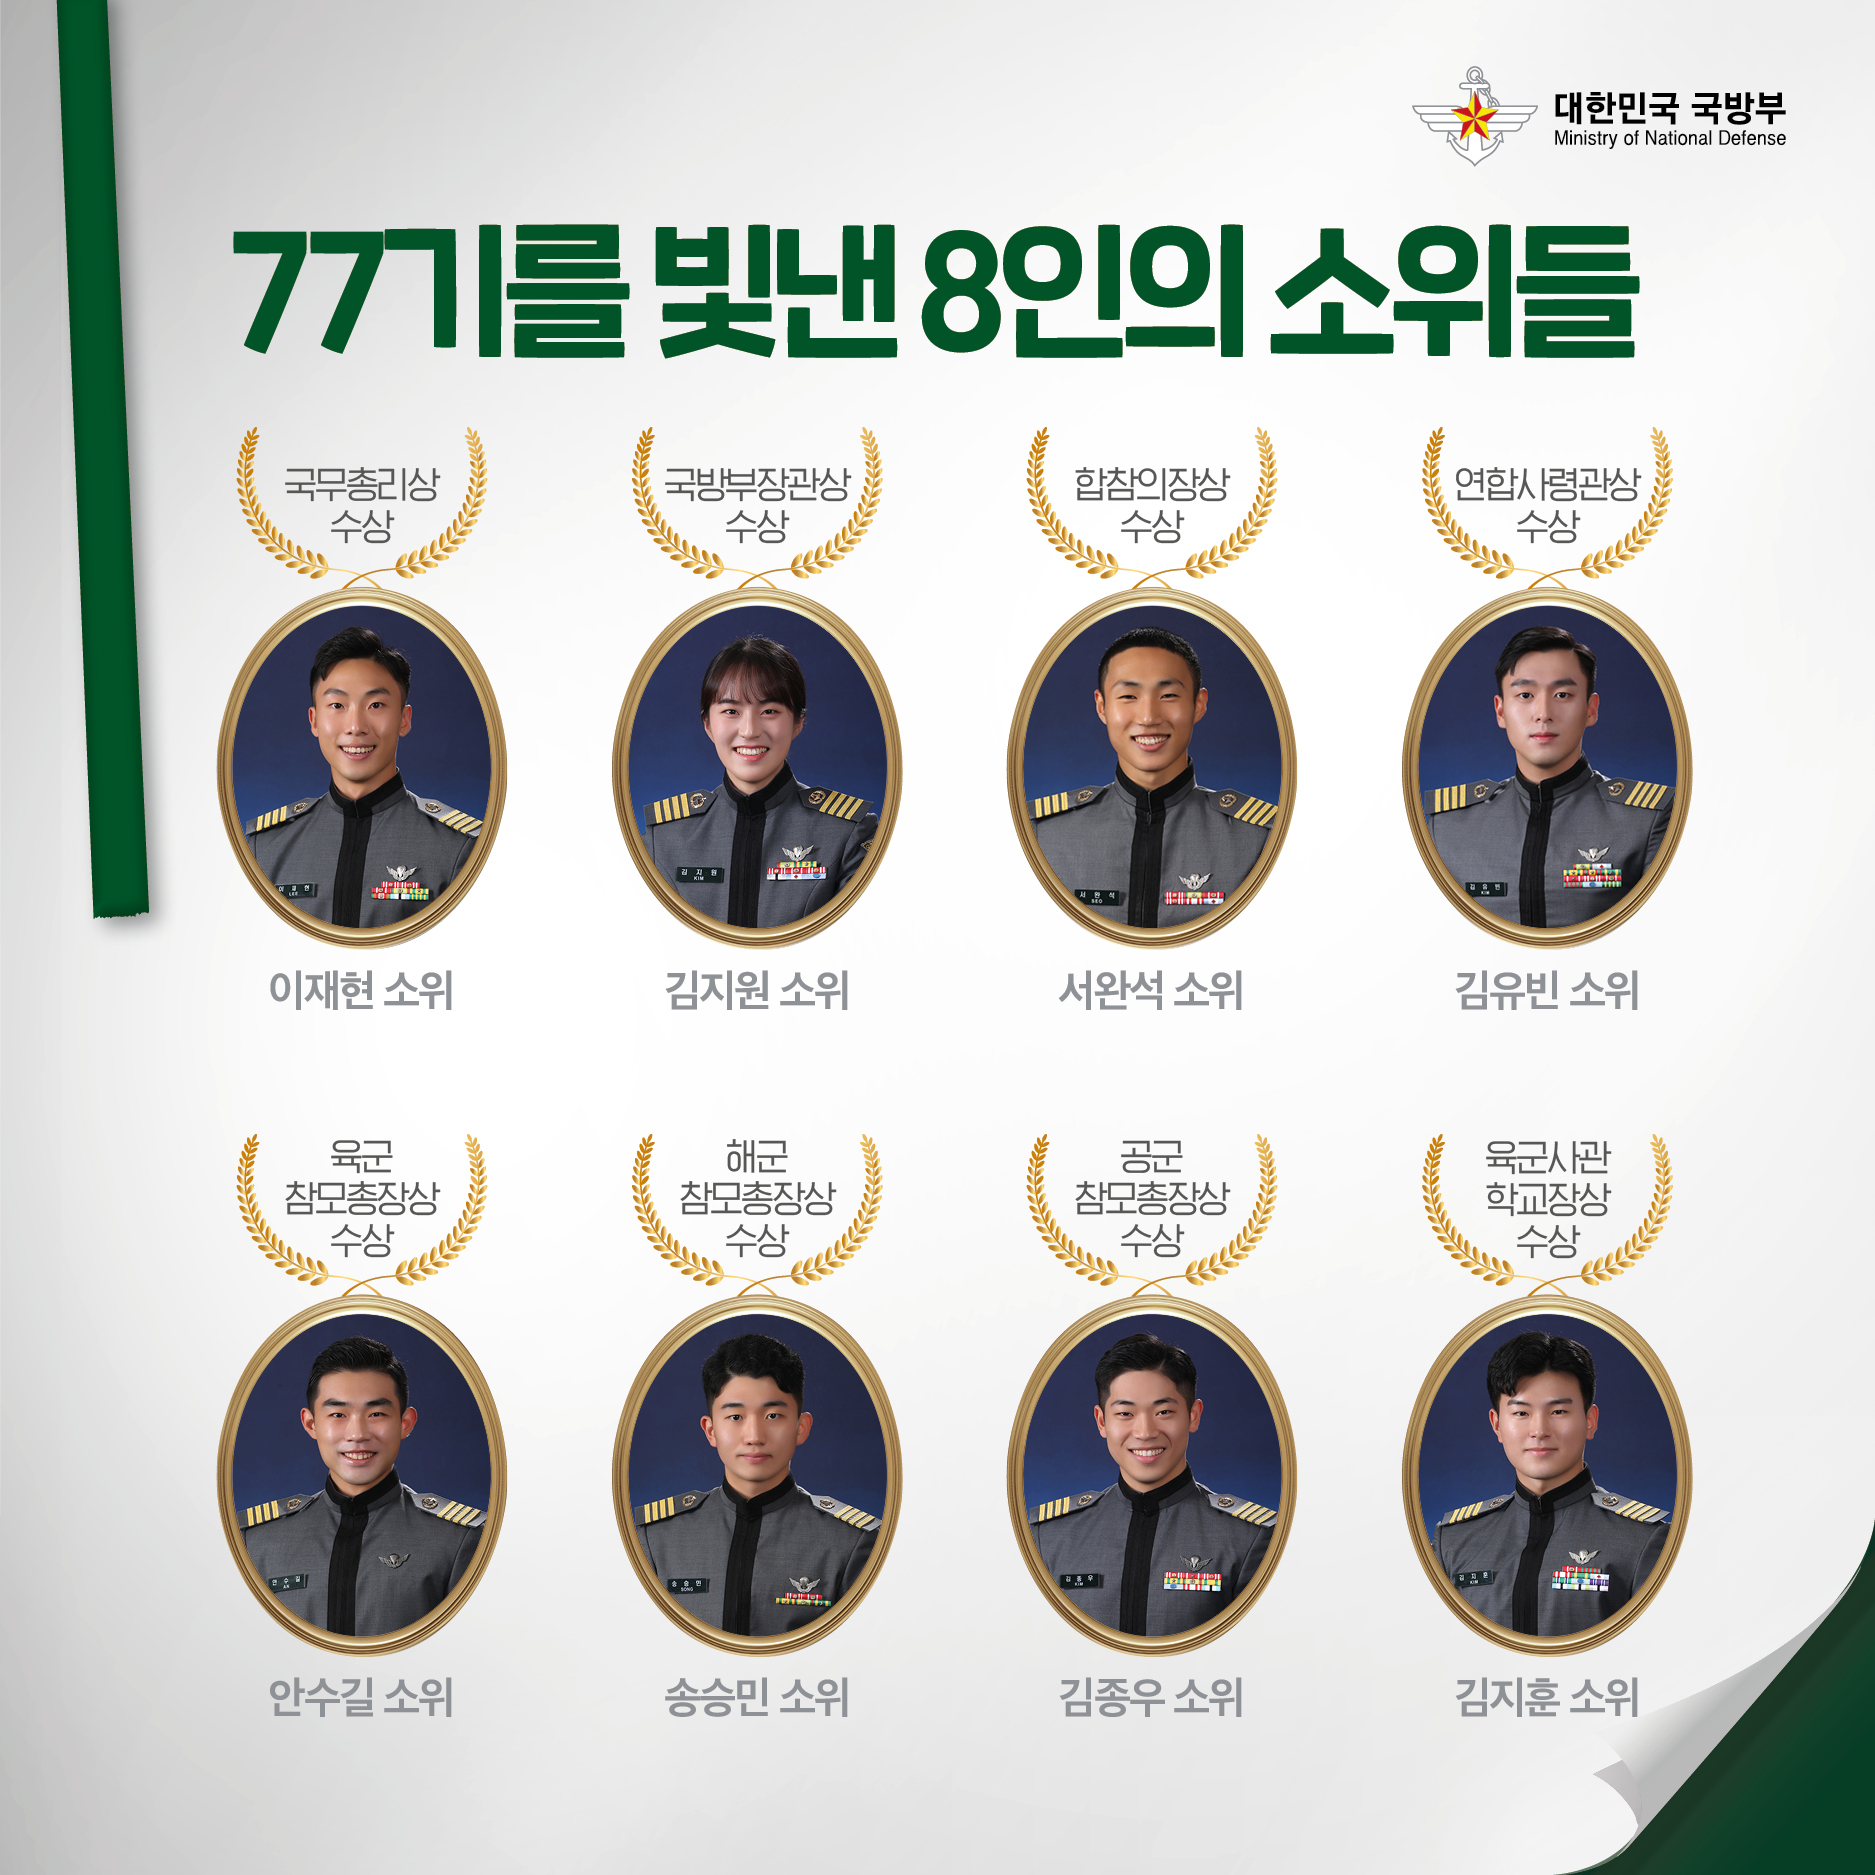 [화제의 인물들] 2021년 육군사관학교 77기 임관자